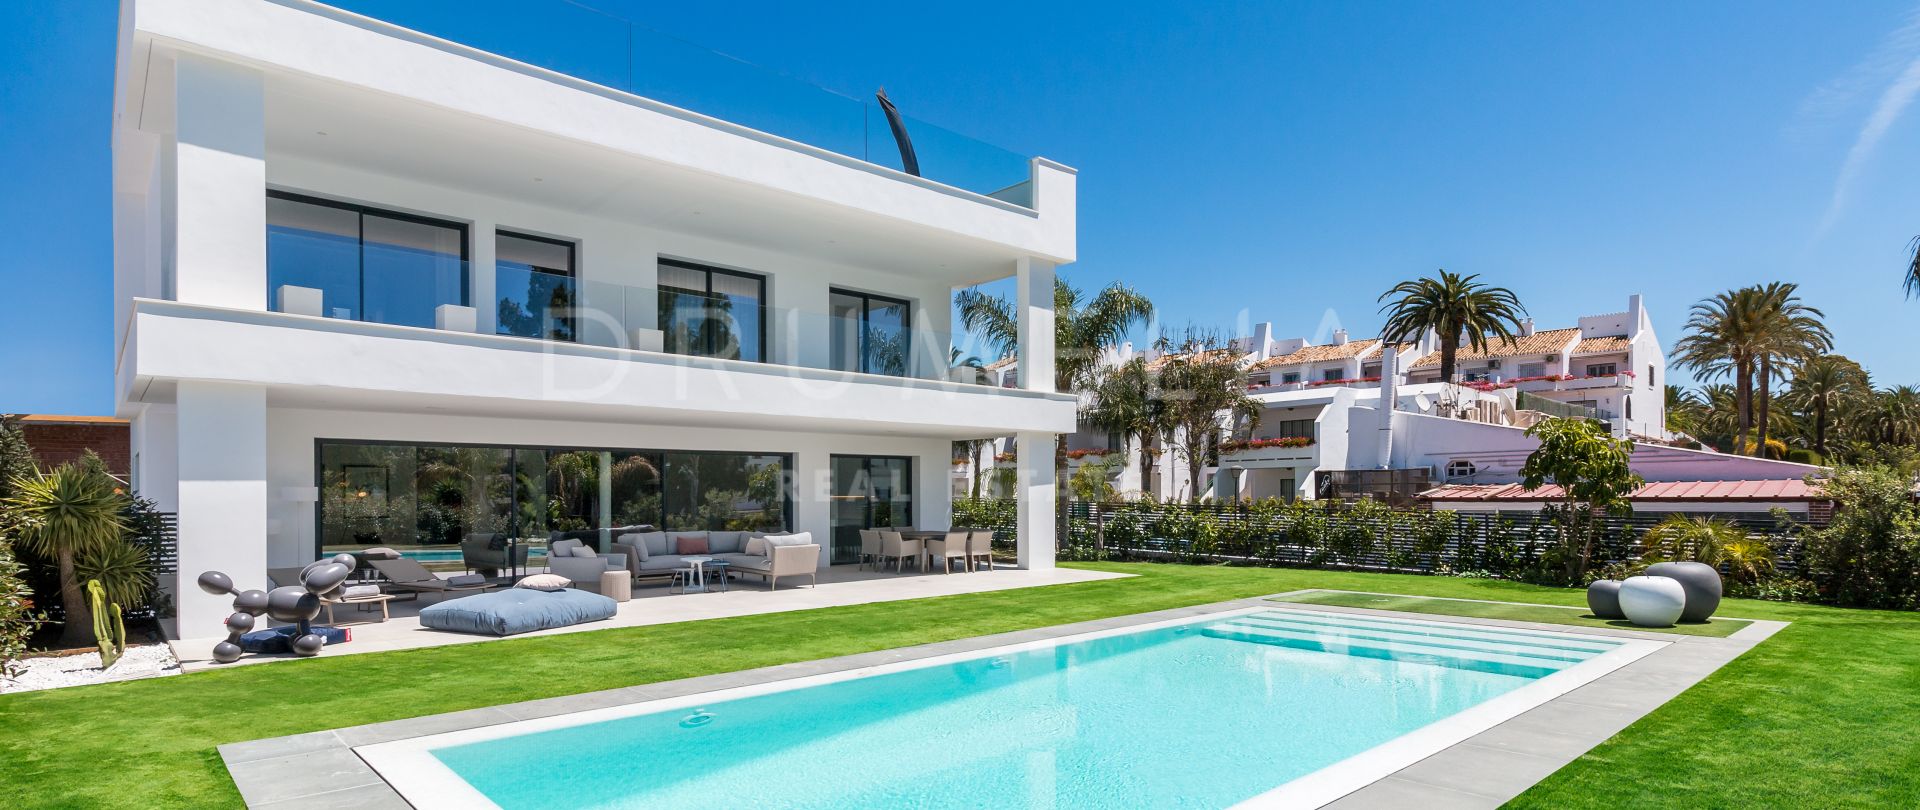 Stijlvolle moderne villa in nieuwbouwwijk, Nueva Andalucía, Marbella